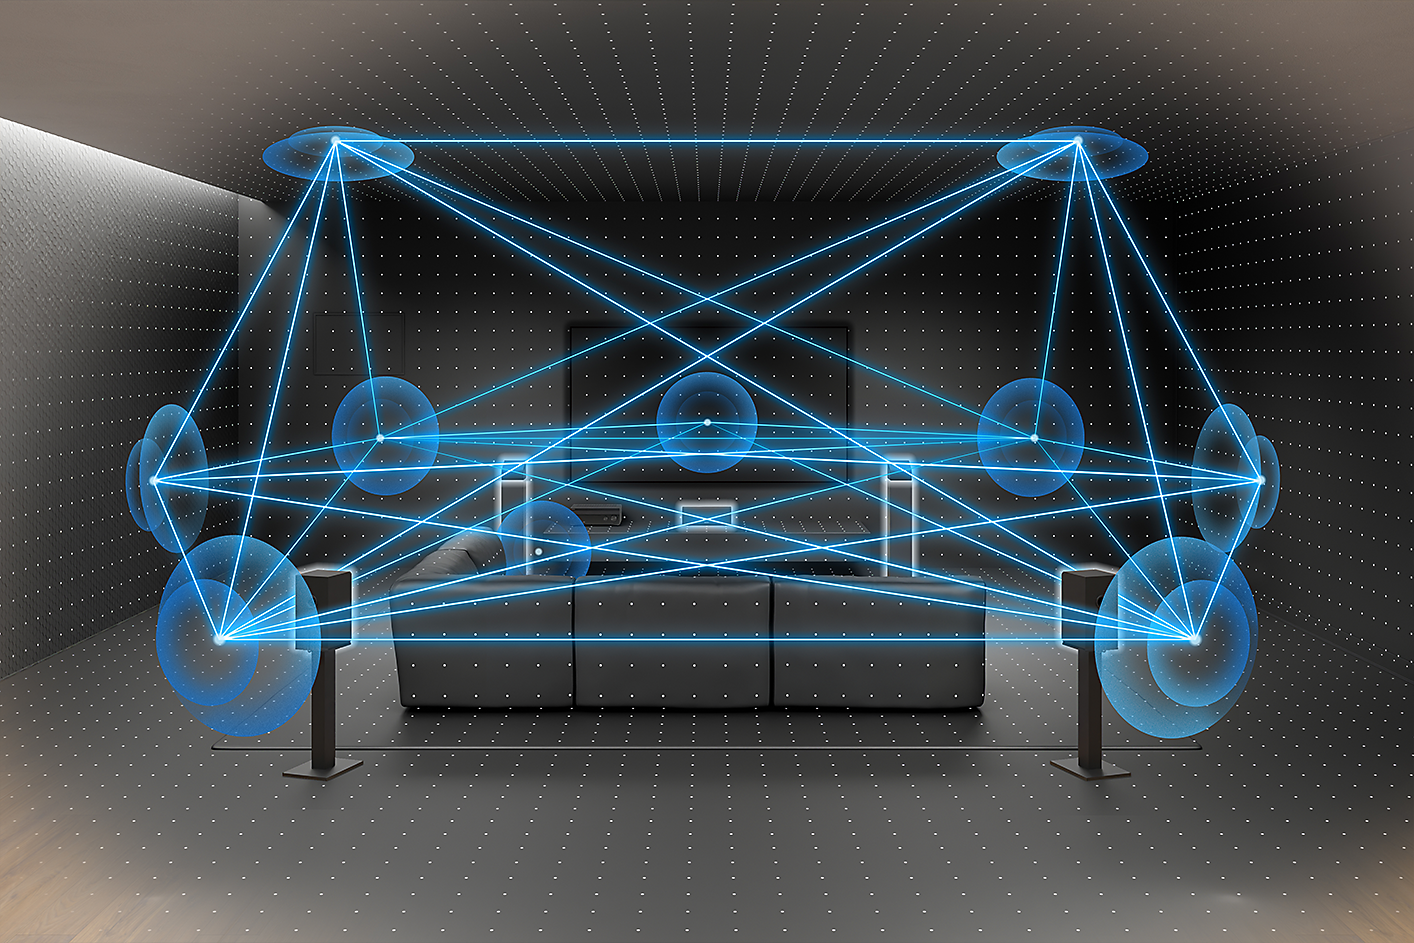 Billede af et rum med sofa, TV og højttalere. Flere linjer og cirkler markerer lydens bevægelse